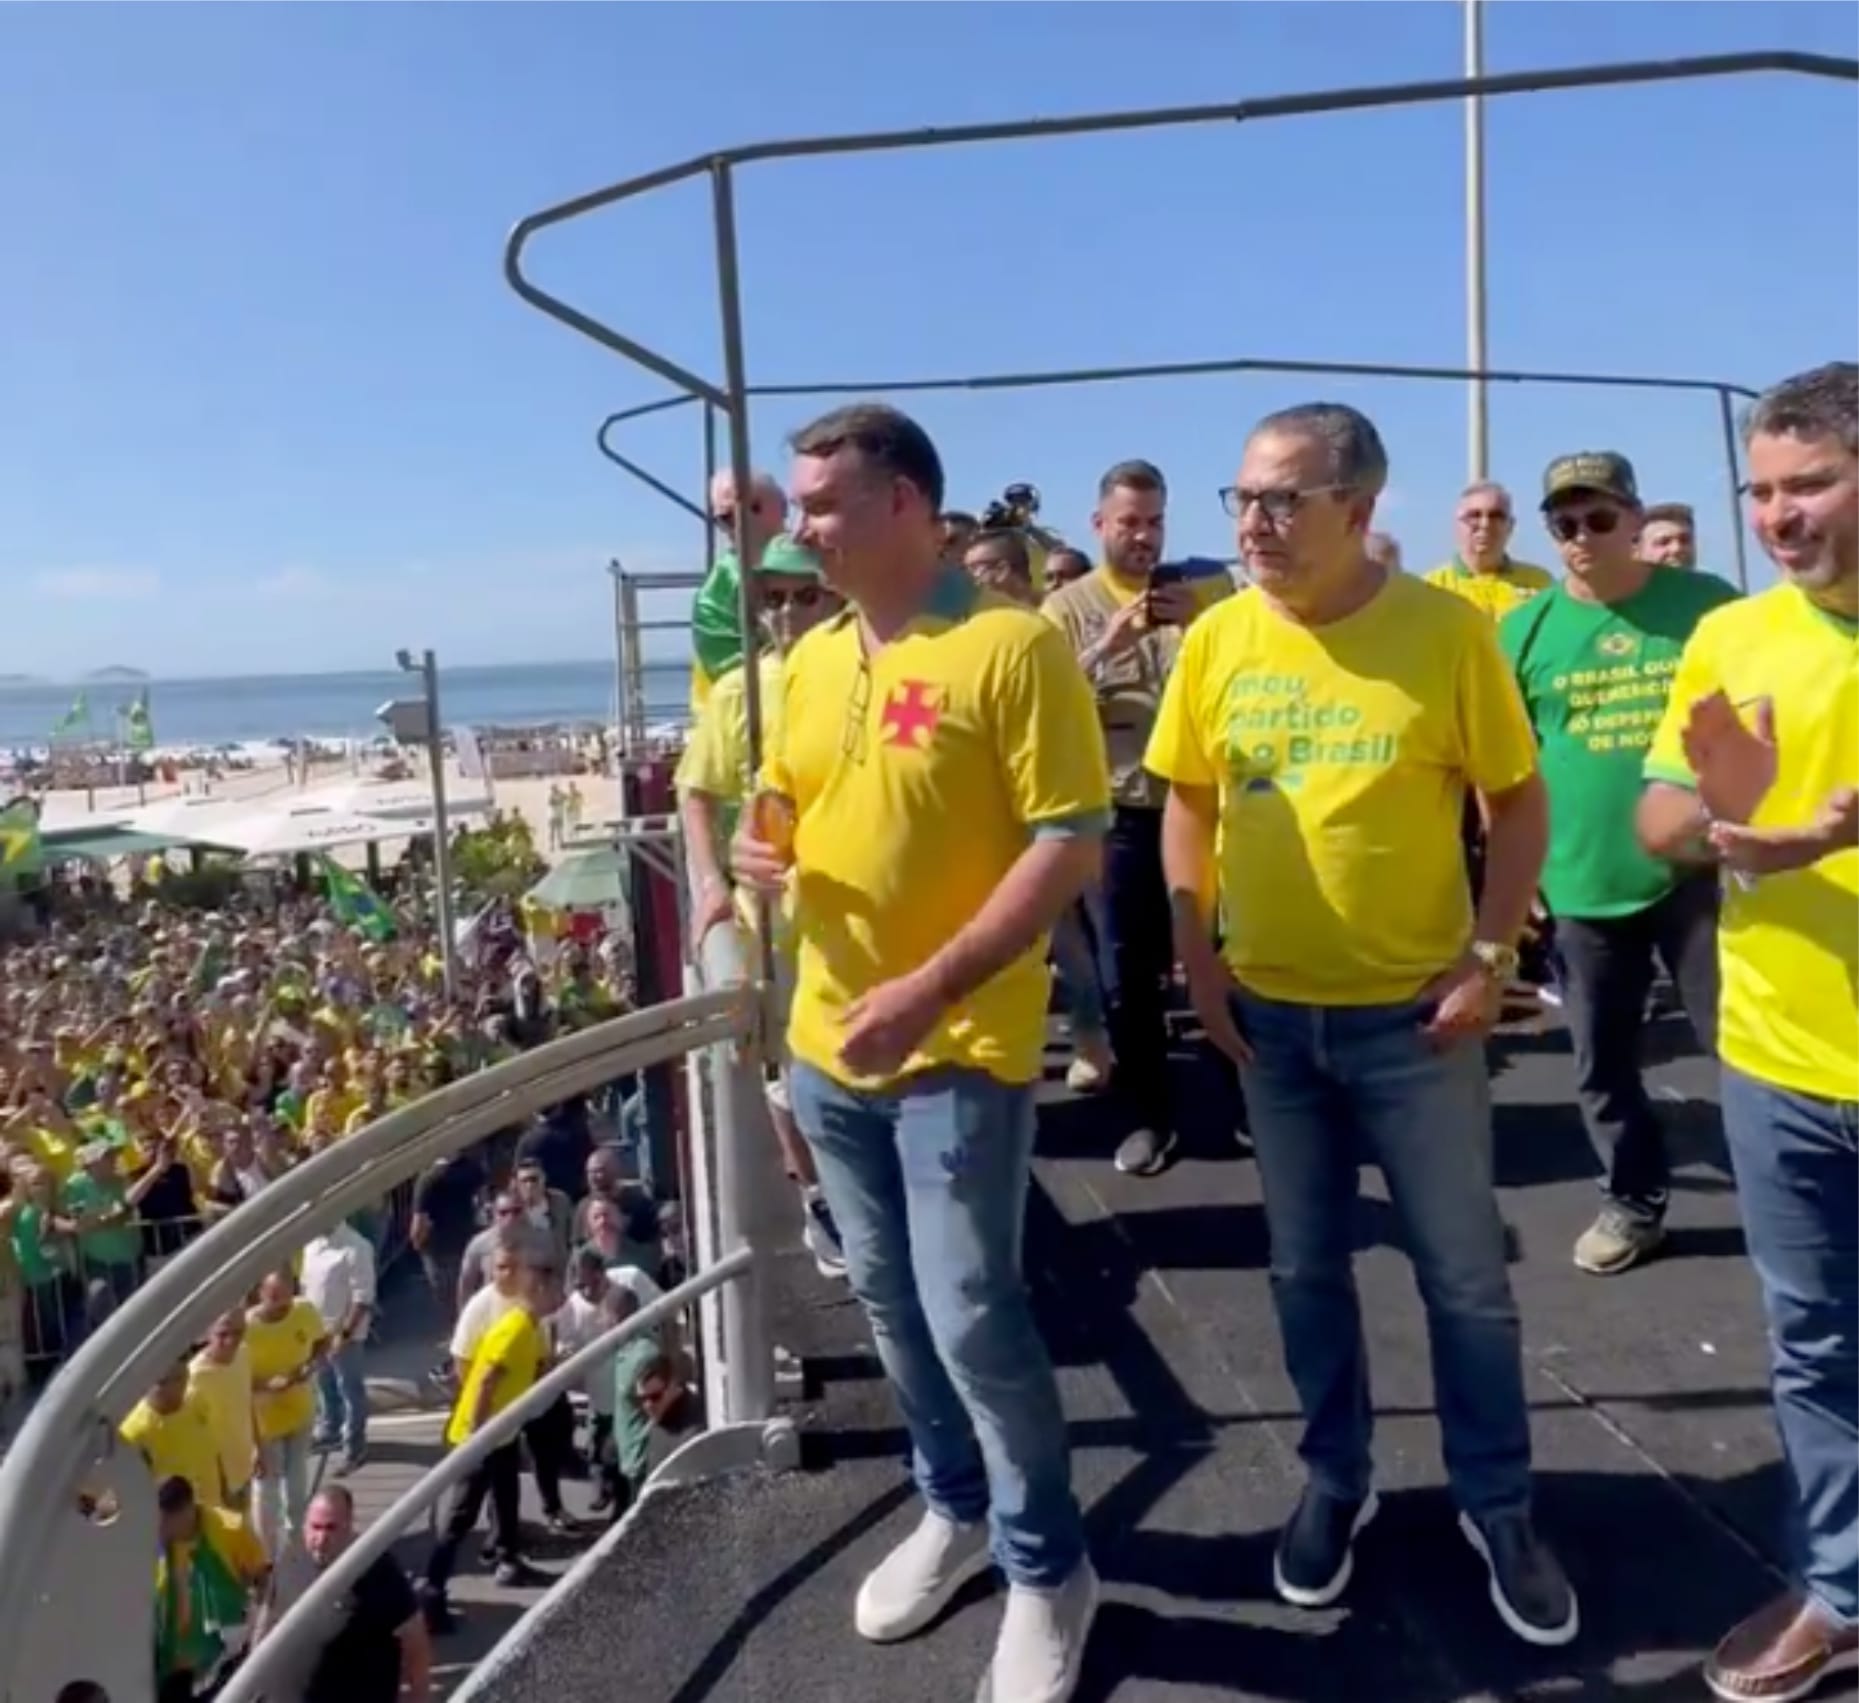 Moraes interferiu nas eleições de forma parcial, diz Flávio Bolsonaro